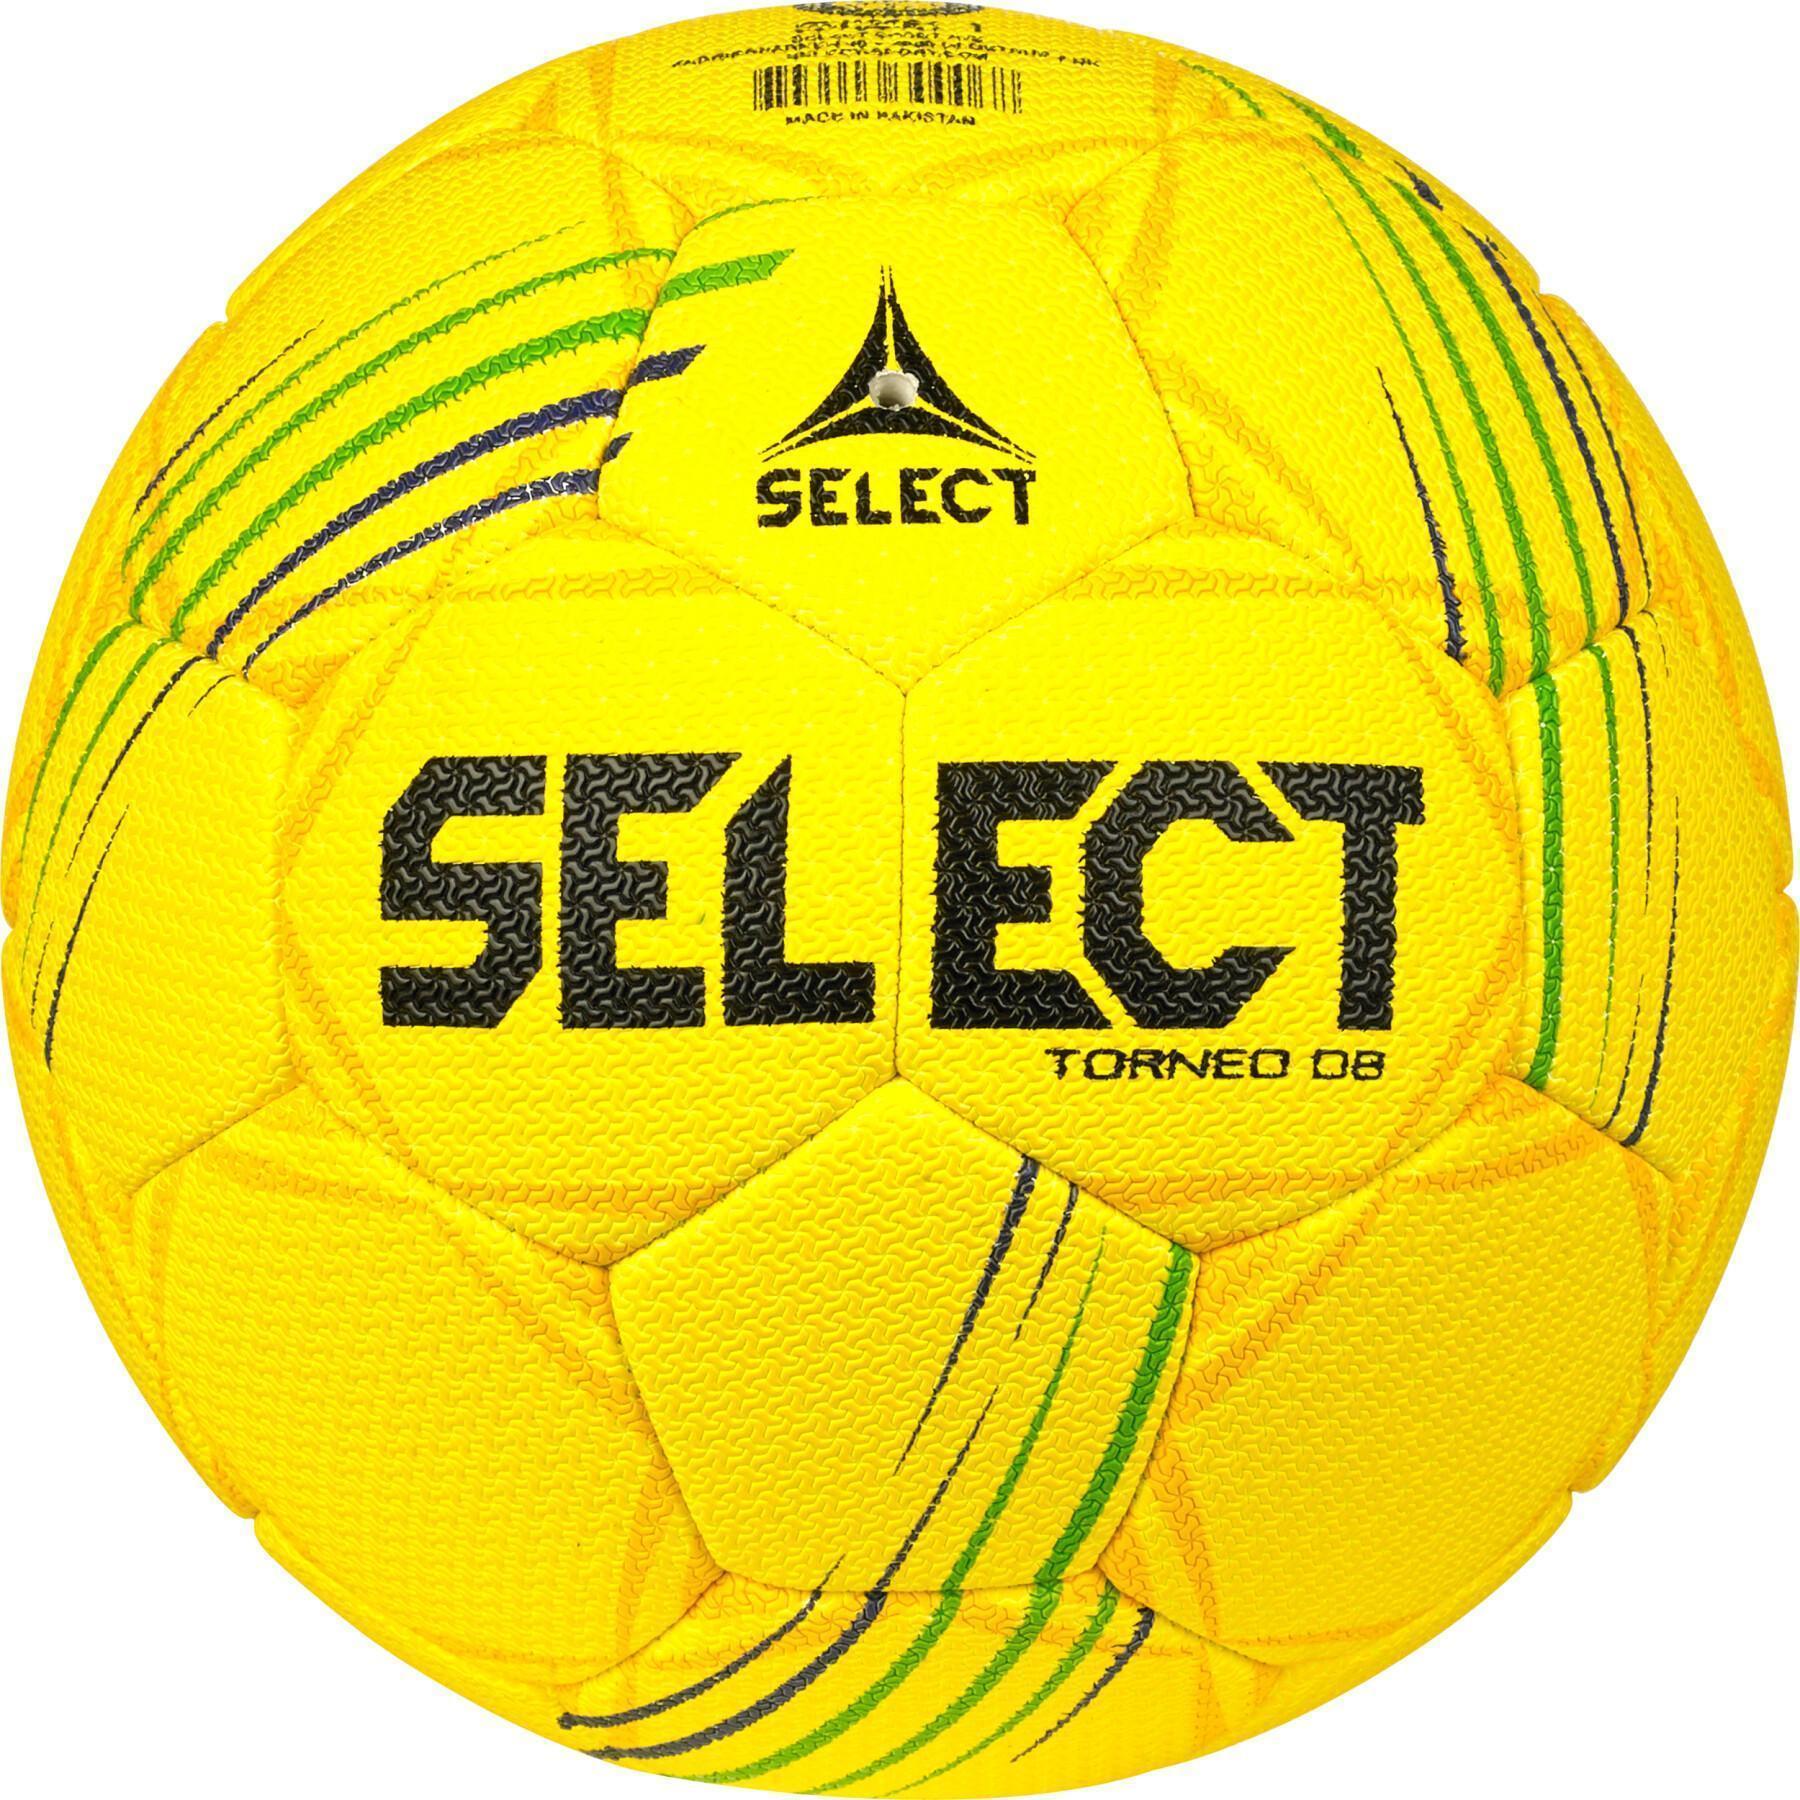 Select Club (Size 5) V23 Ballon D'entraînement pour, Blanc - Jaune